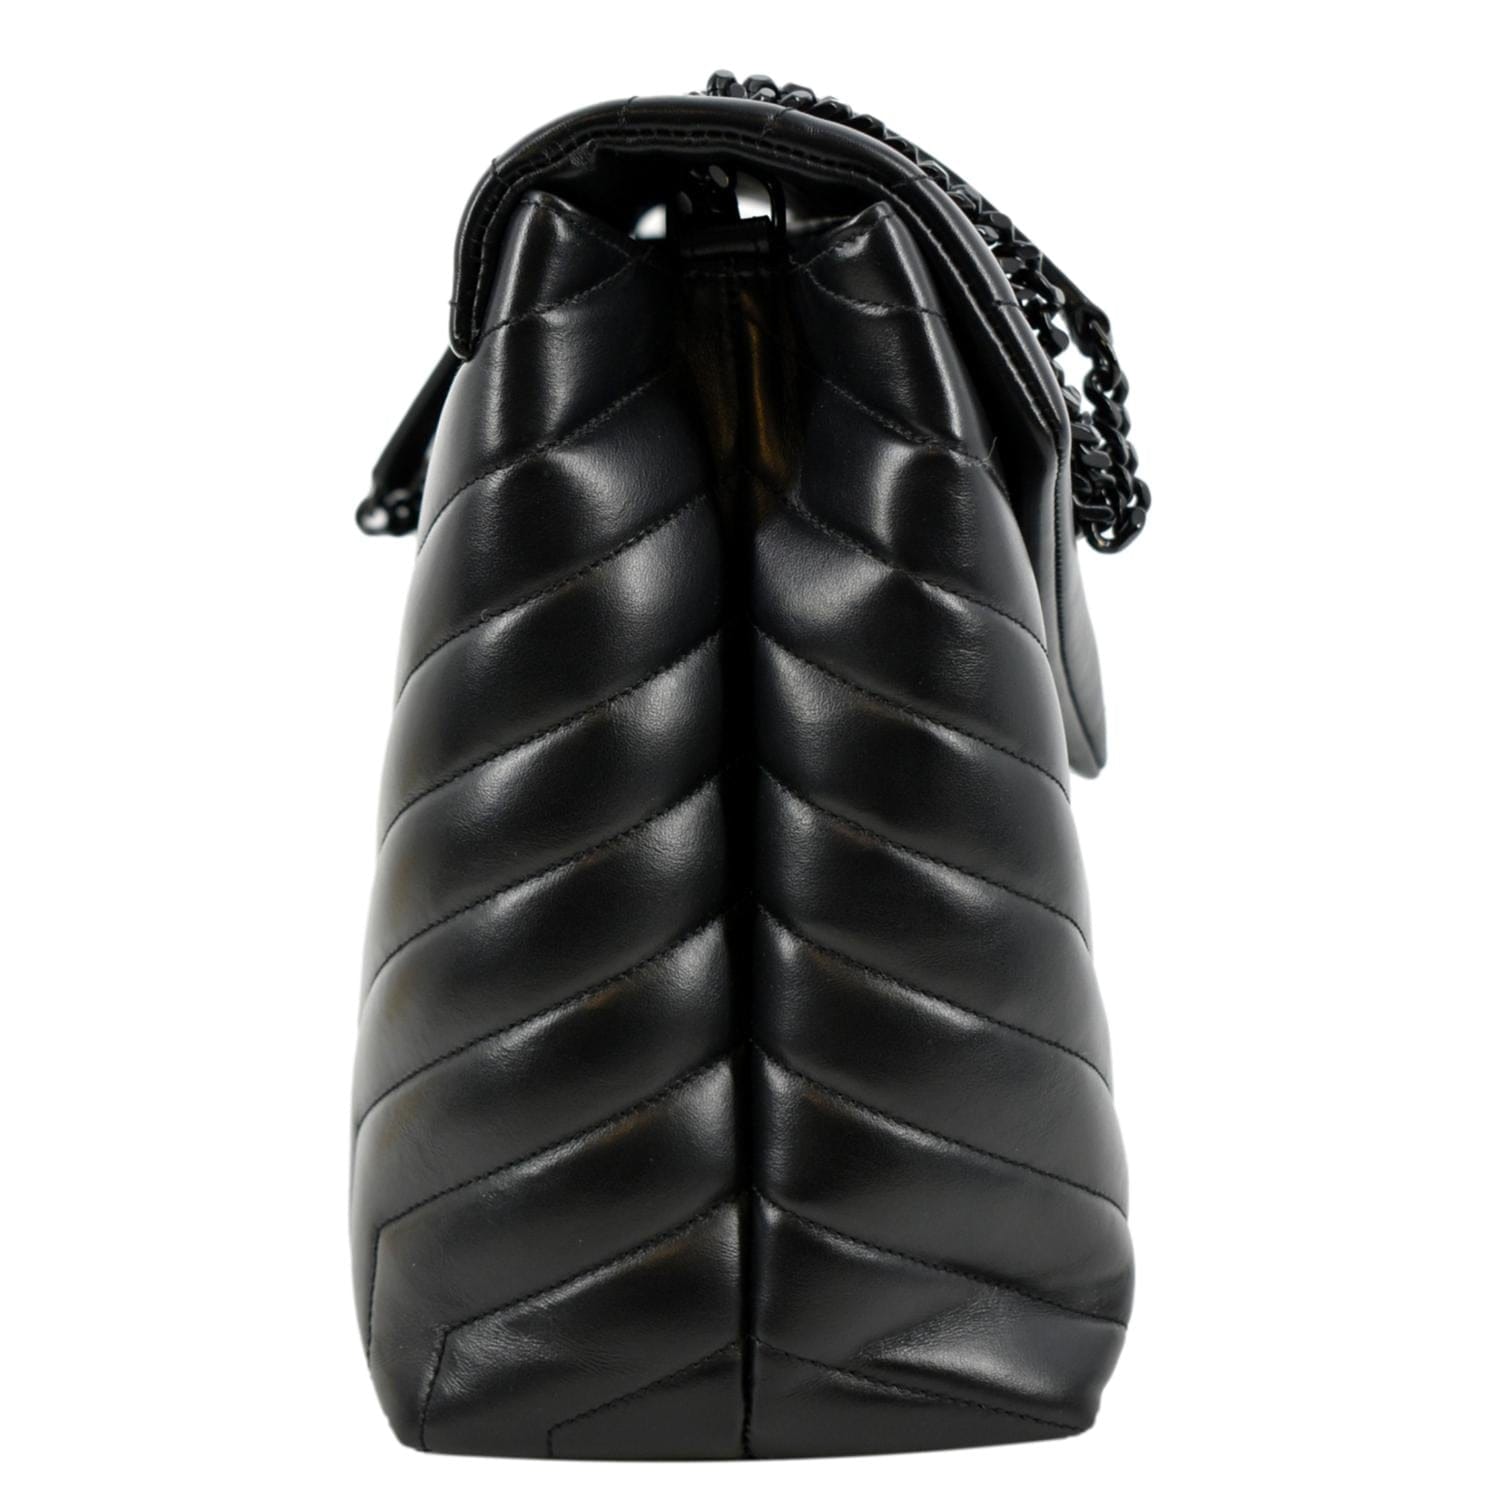 Saint Laurent Large Loulou Matelassé Leather Shoulder Bag